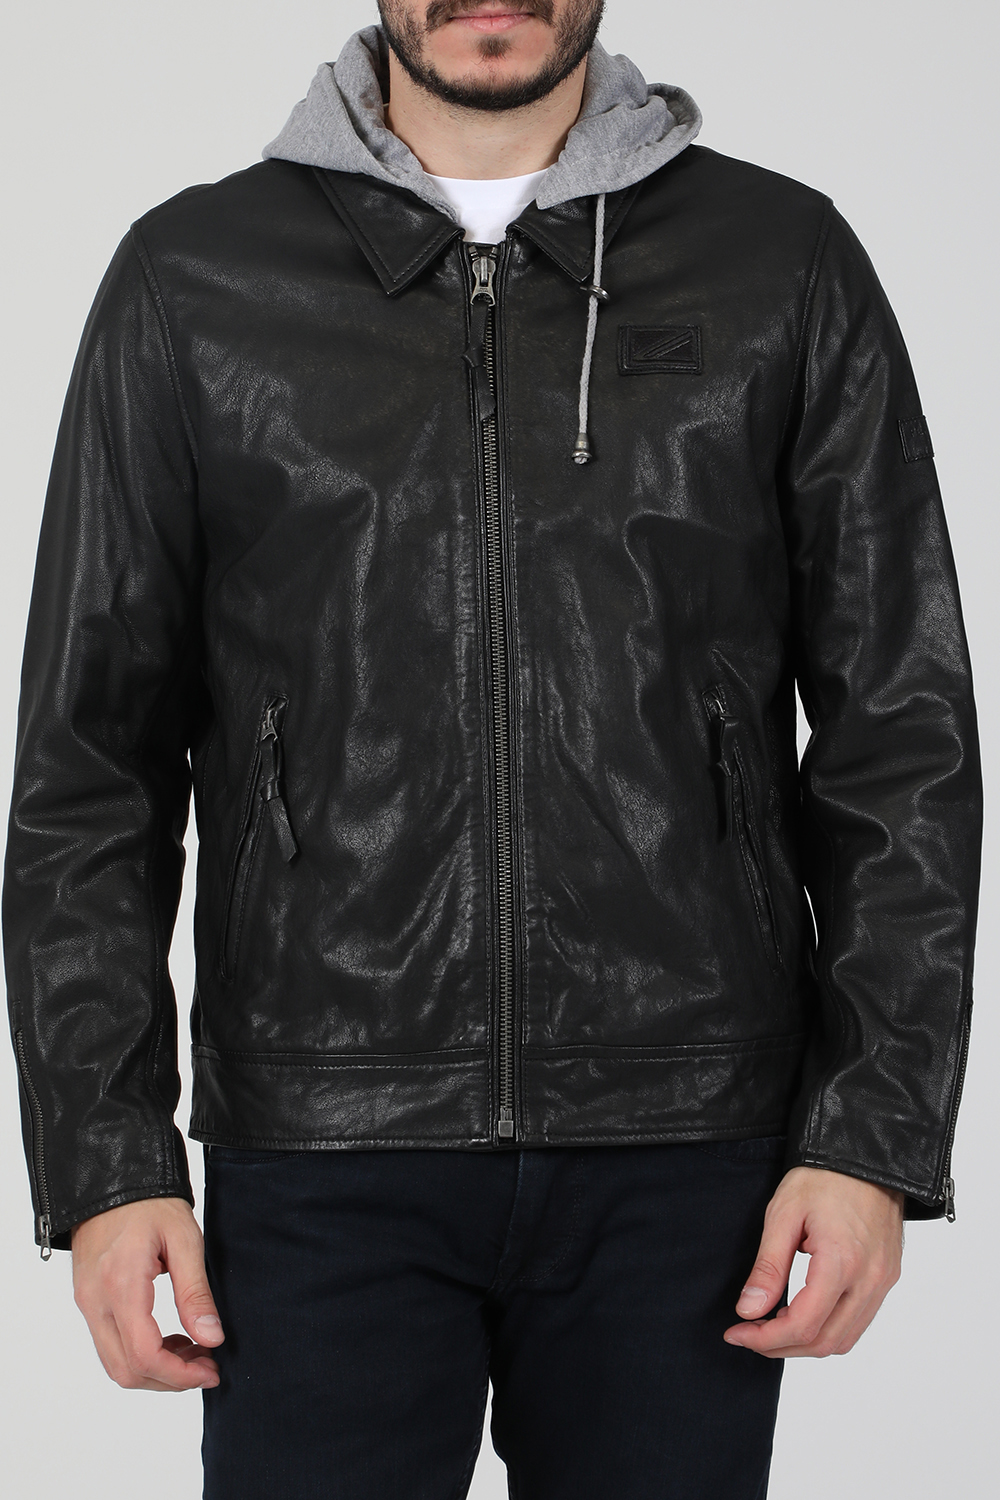 Ανδρικά/Ρούχα/Πανωφόρια/Τζάκετς PEPE JEANS - Ανδρικό δερμάτινο jacket PEPE JEANS PHILIP μαύρο